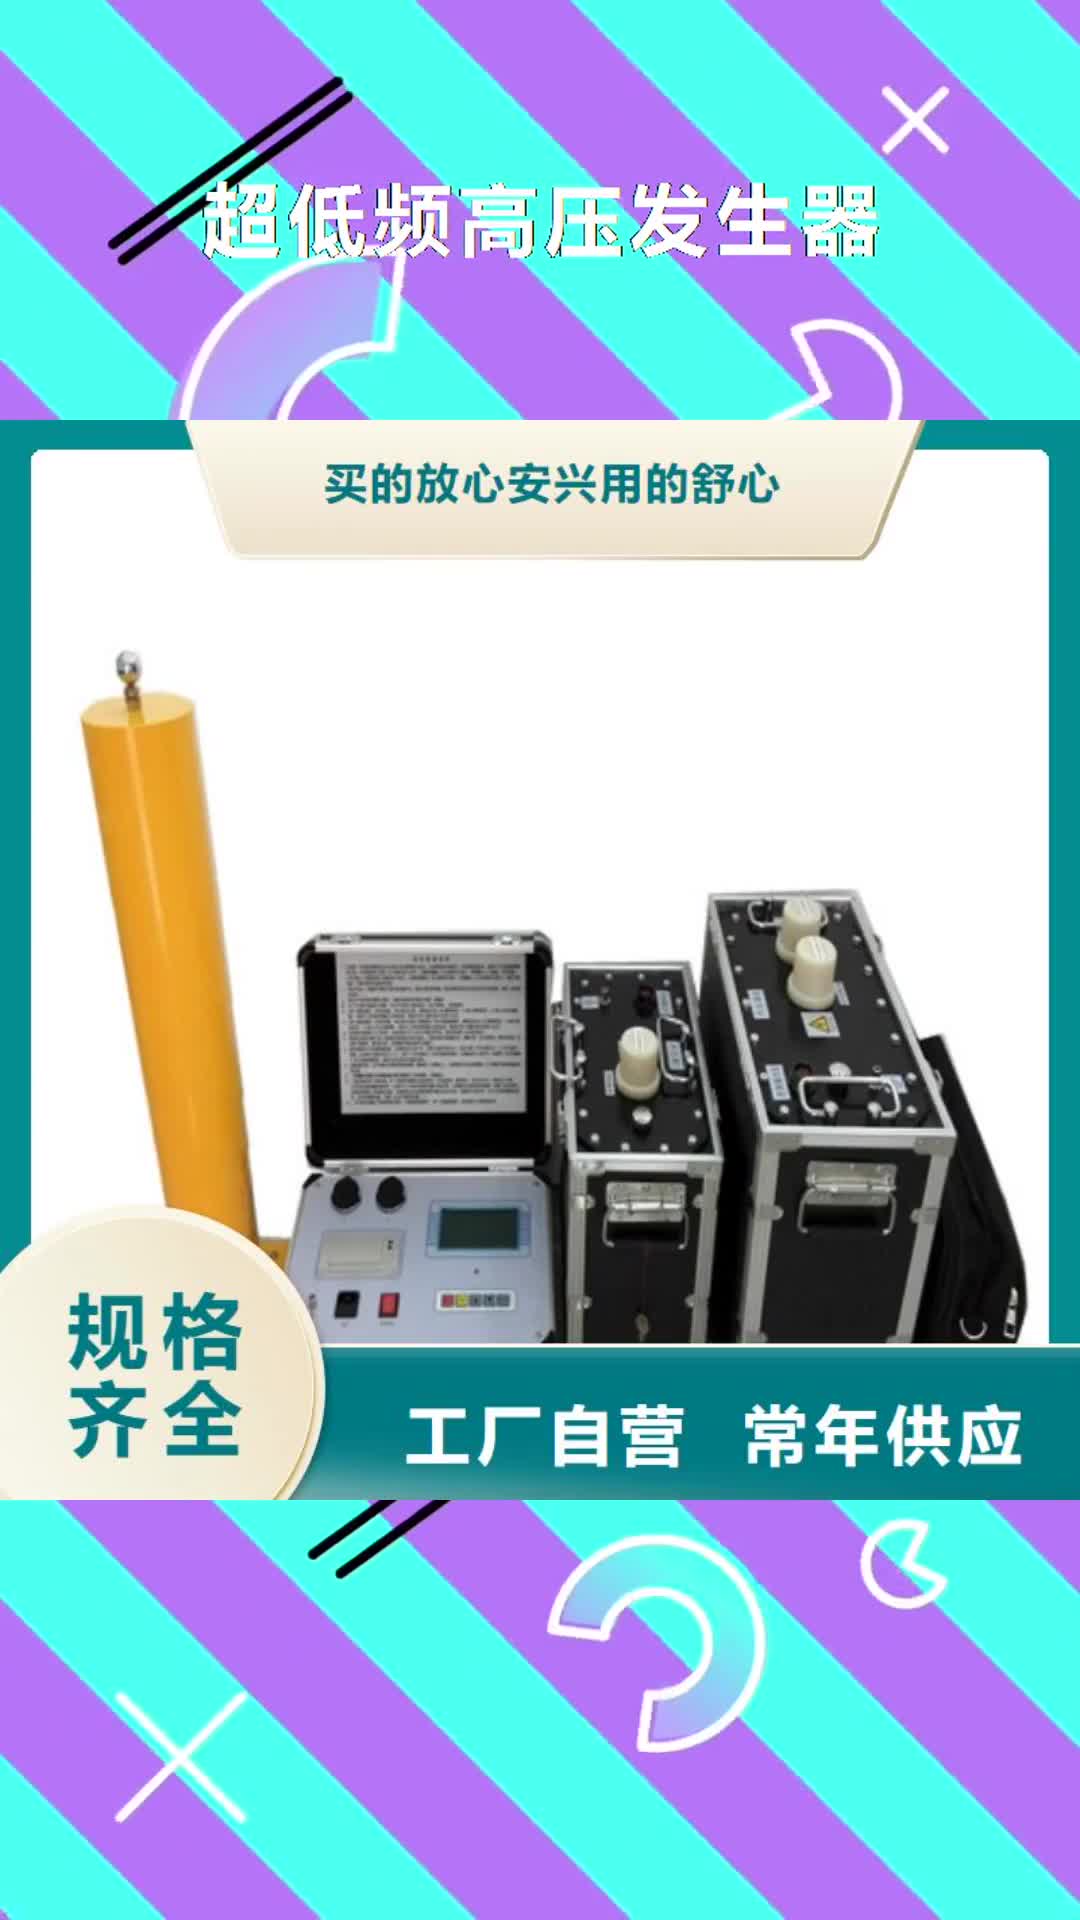 淄博【超低频高压发生器】,电力电气测试仪器厂家直销售后完善